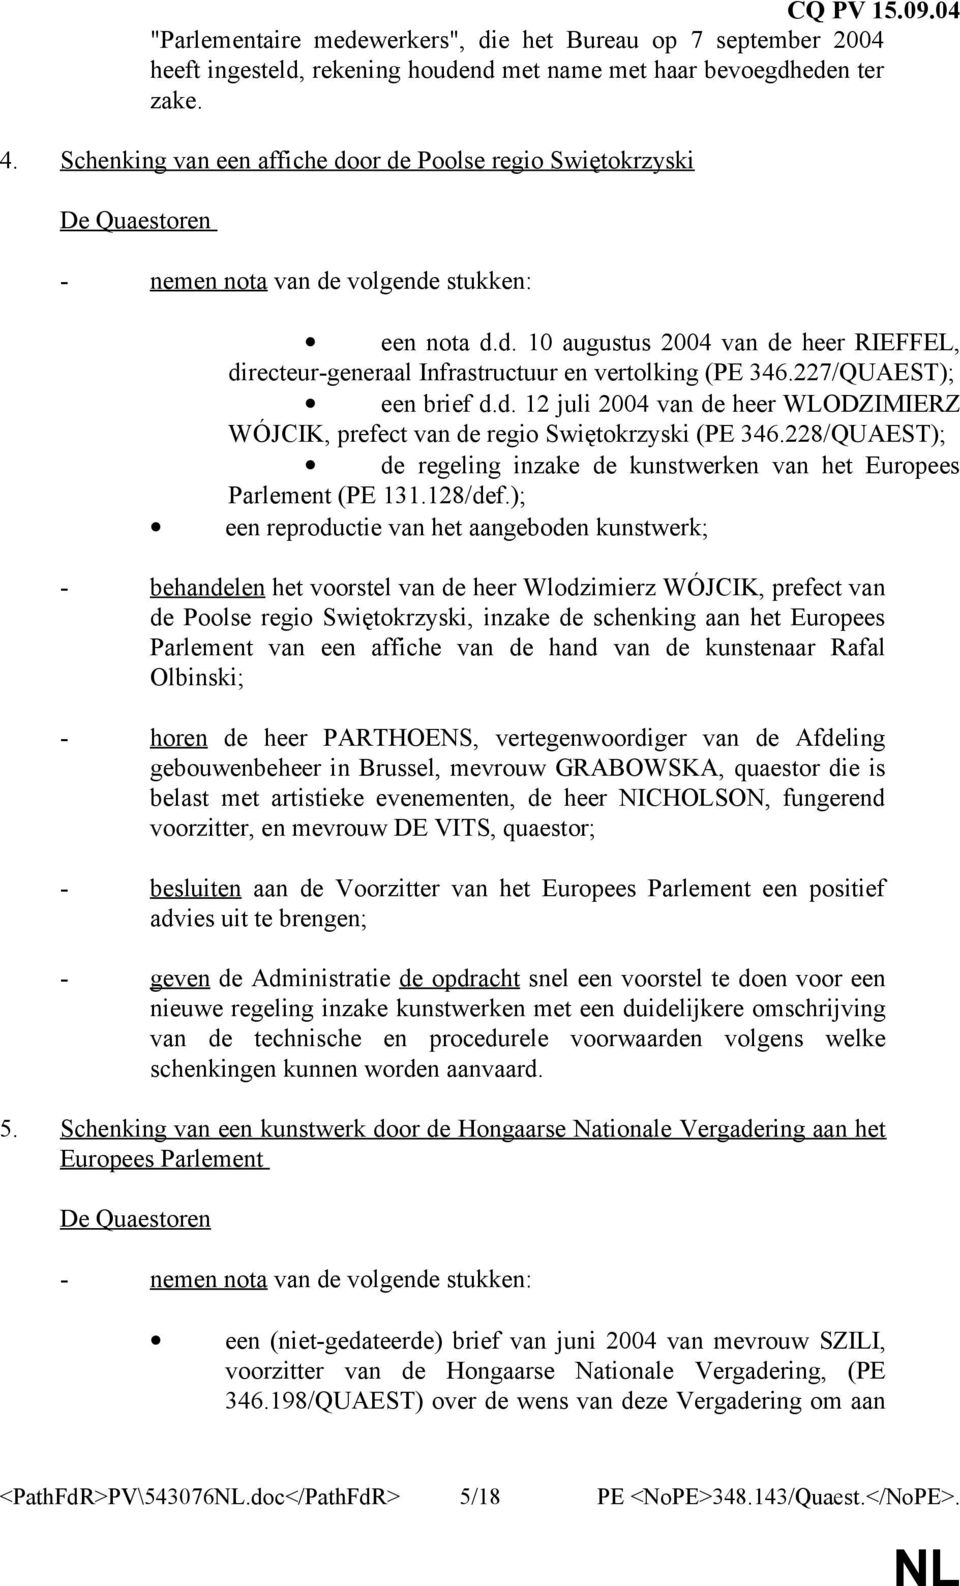 227/QUAEST); een brief d.d. 12 juli 2004 van de heer WLODZIMIERZ WÓJCIK, prefect van de regio Swiętokrzyski (PE 346.228/QUAEST); de regeling inzake de kunstwerken van het Europees Parlement (PE 131.